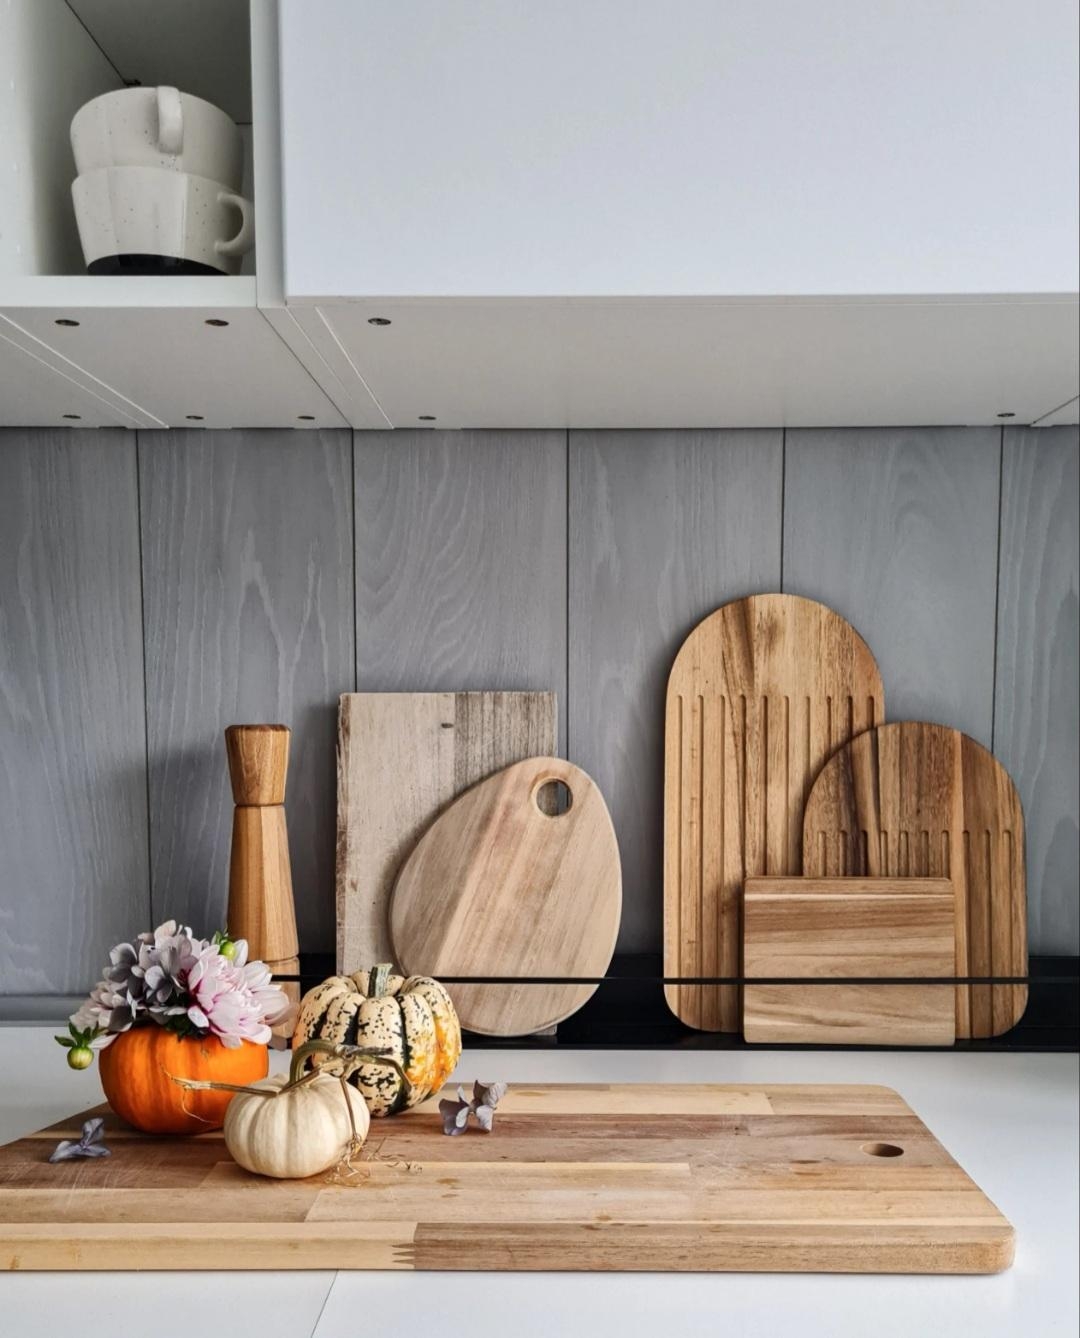 Herbstdekoration 🍁
#Herbst #herbstdekoration #kitchen #Küche #brettchenliebe #arbeitsplatte #küchenideen